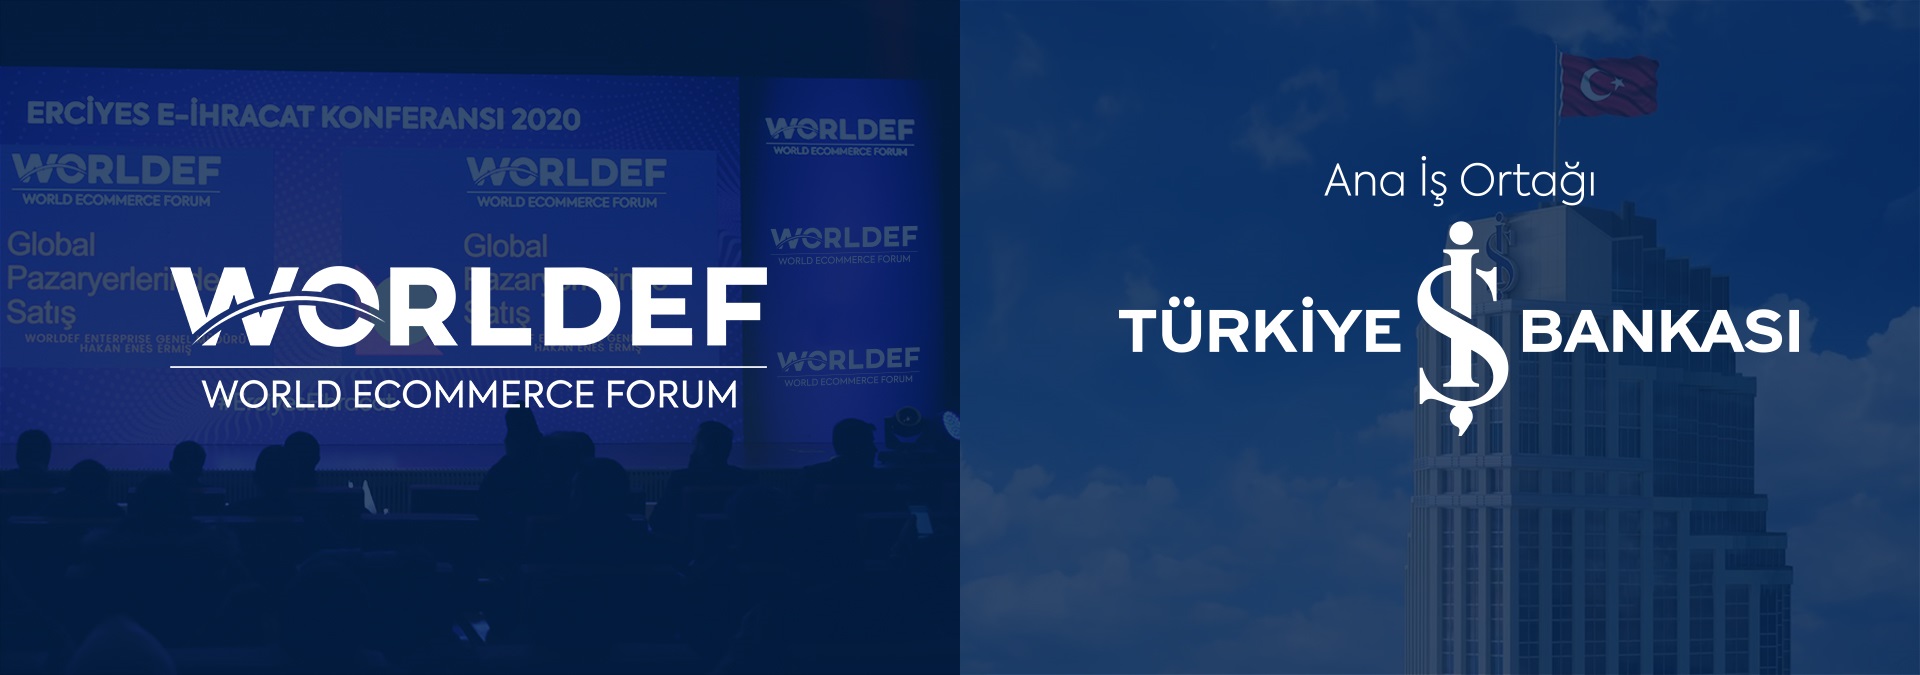  Türkiye İş Bankası, Türkiye’nin ilk ve tek e-ihracat platformu olan WORLDEF’in ana iş ortağı oldu.